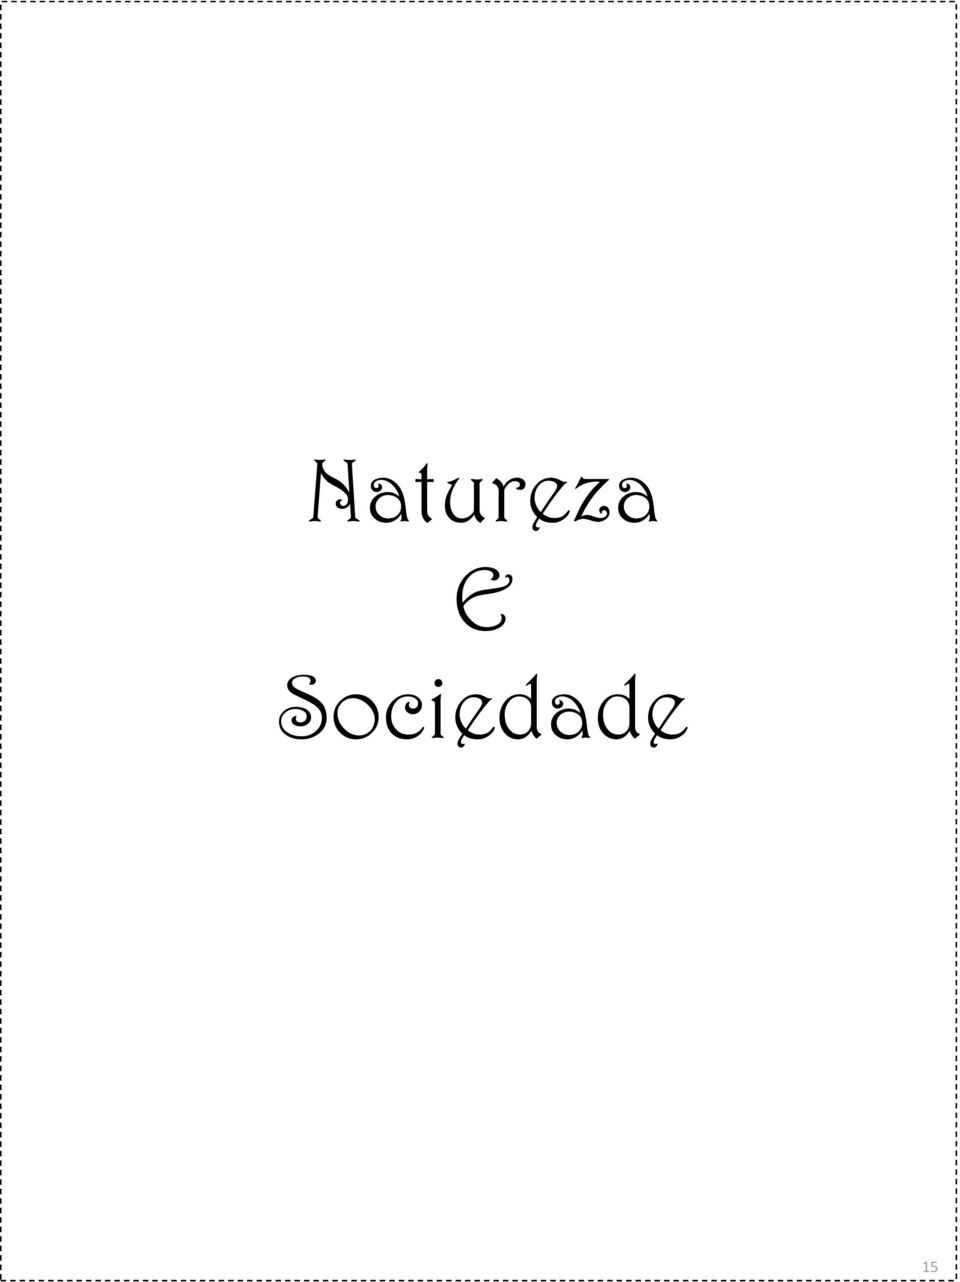 Sociedade